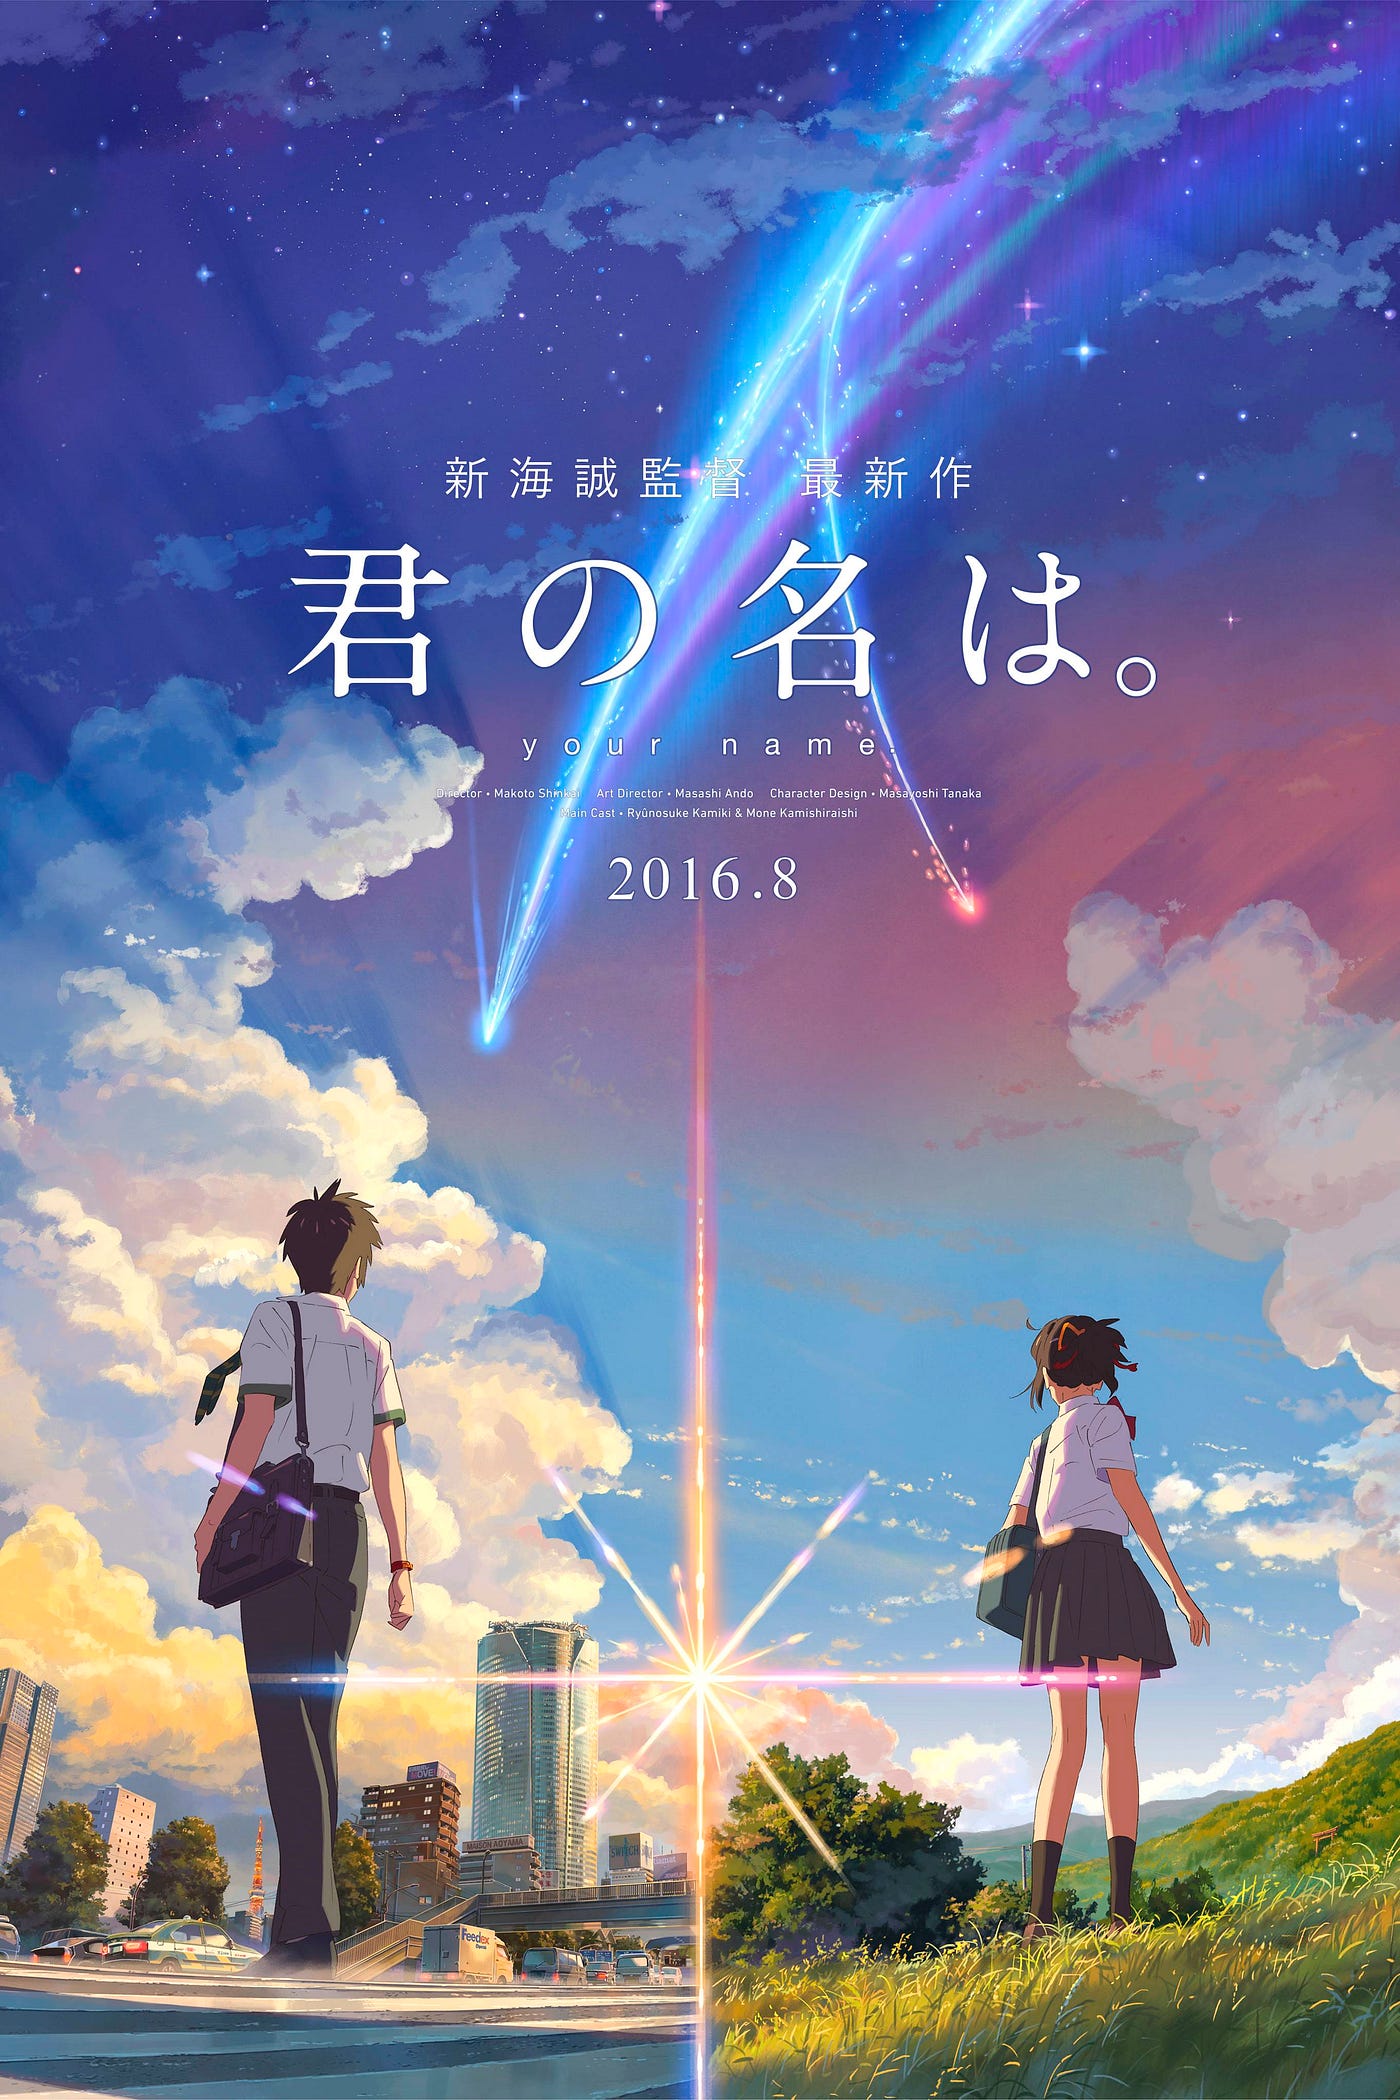 Com lançamento previsto para novembro no Japão, filme Kimi wa